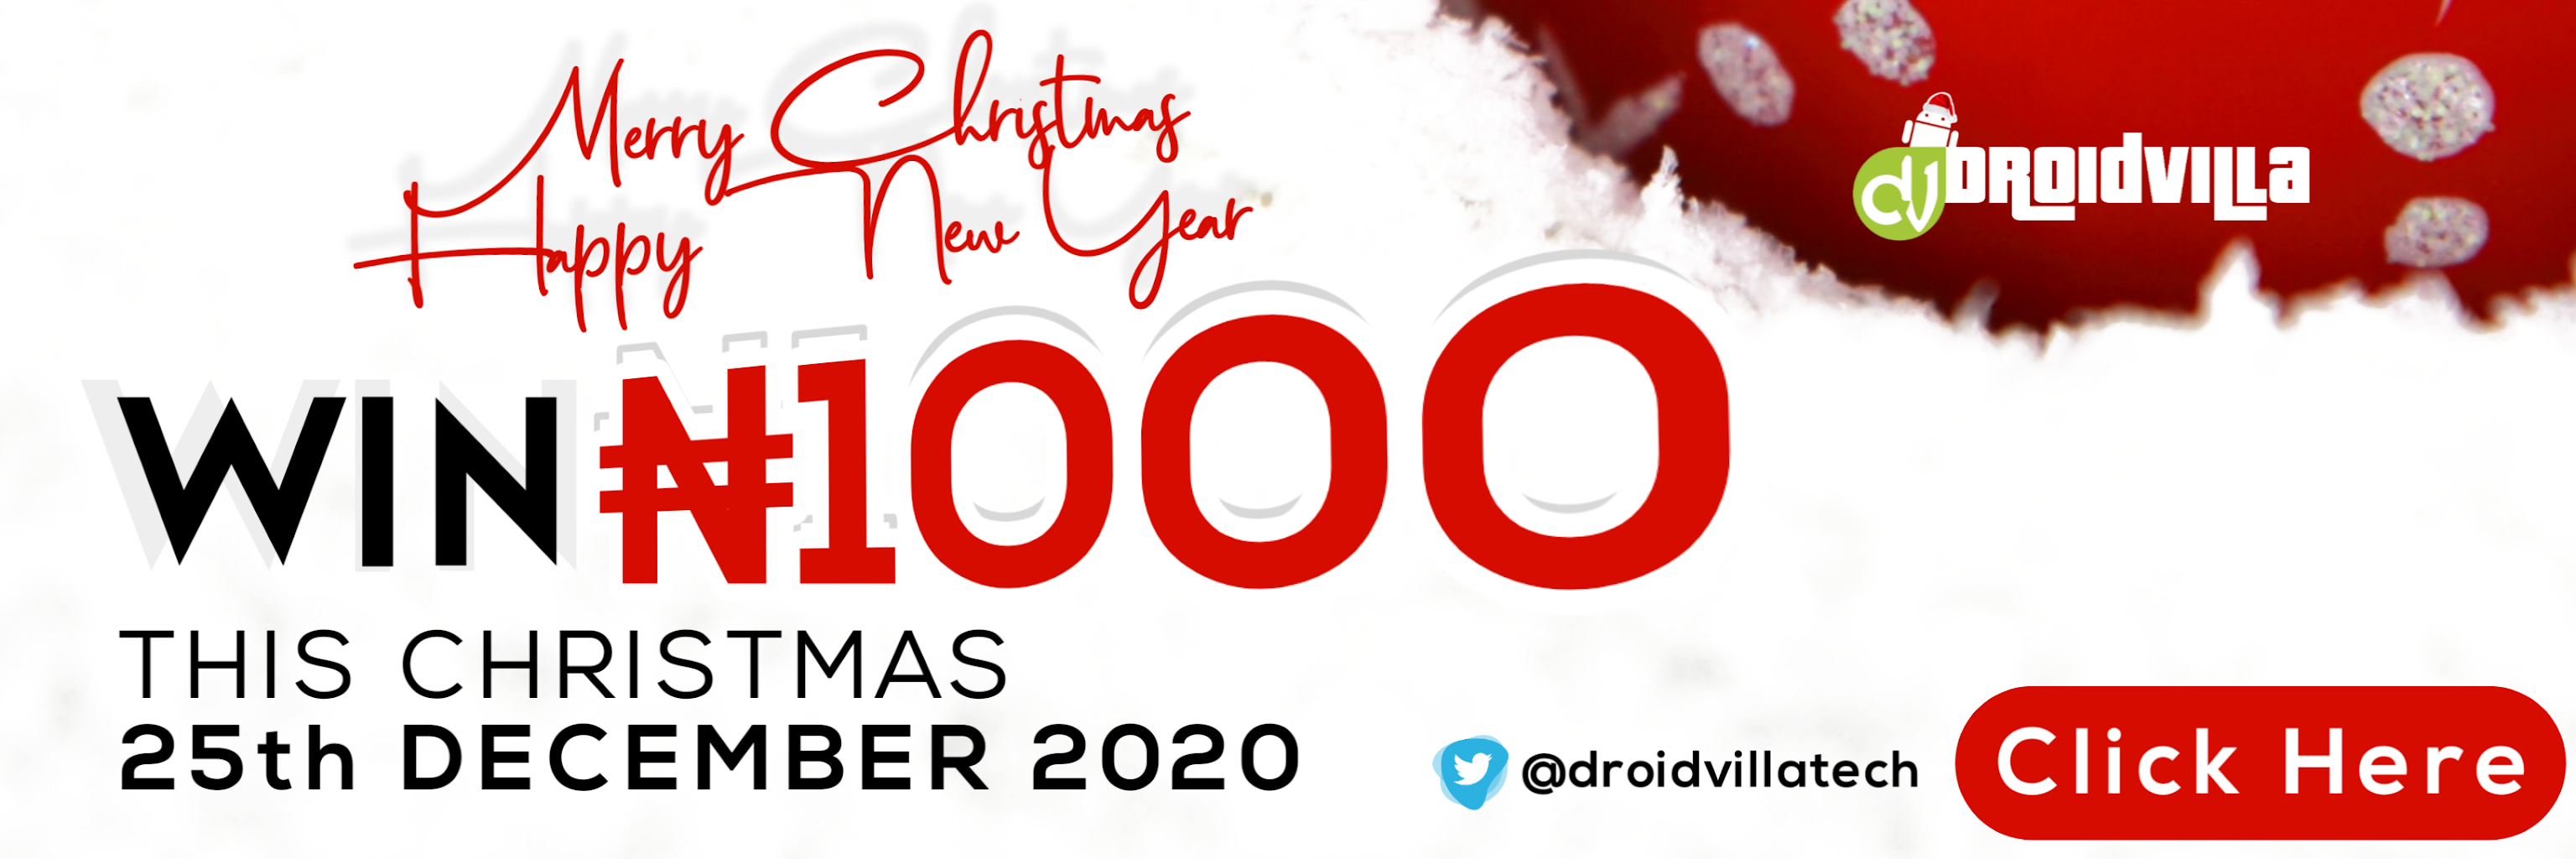 Droidvilla Christmas N1000 Giveaway